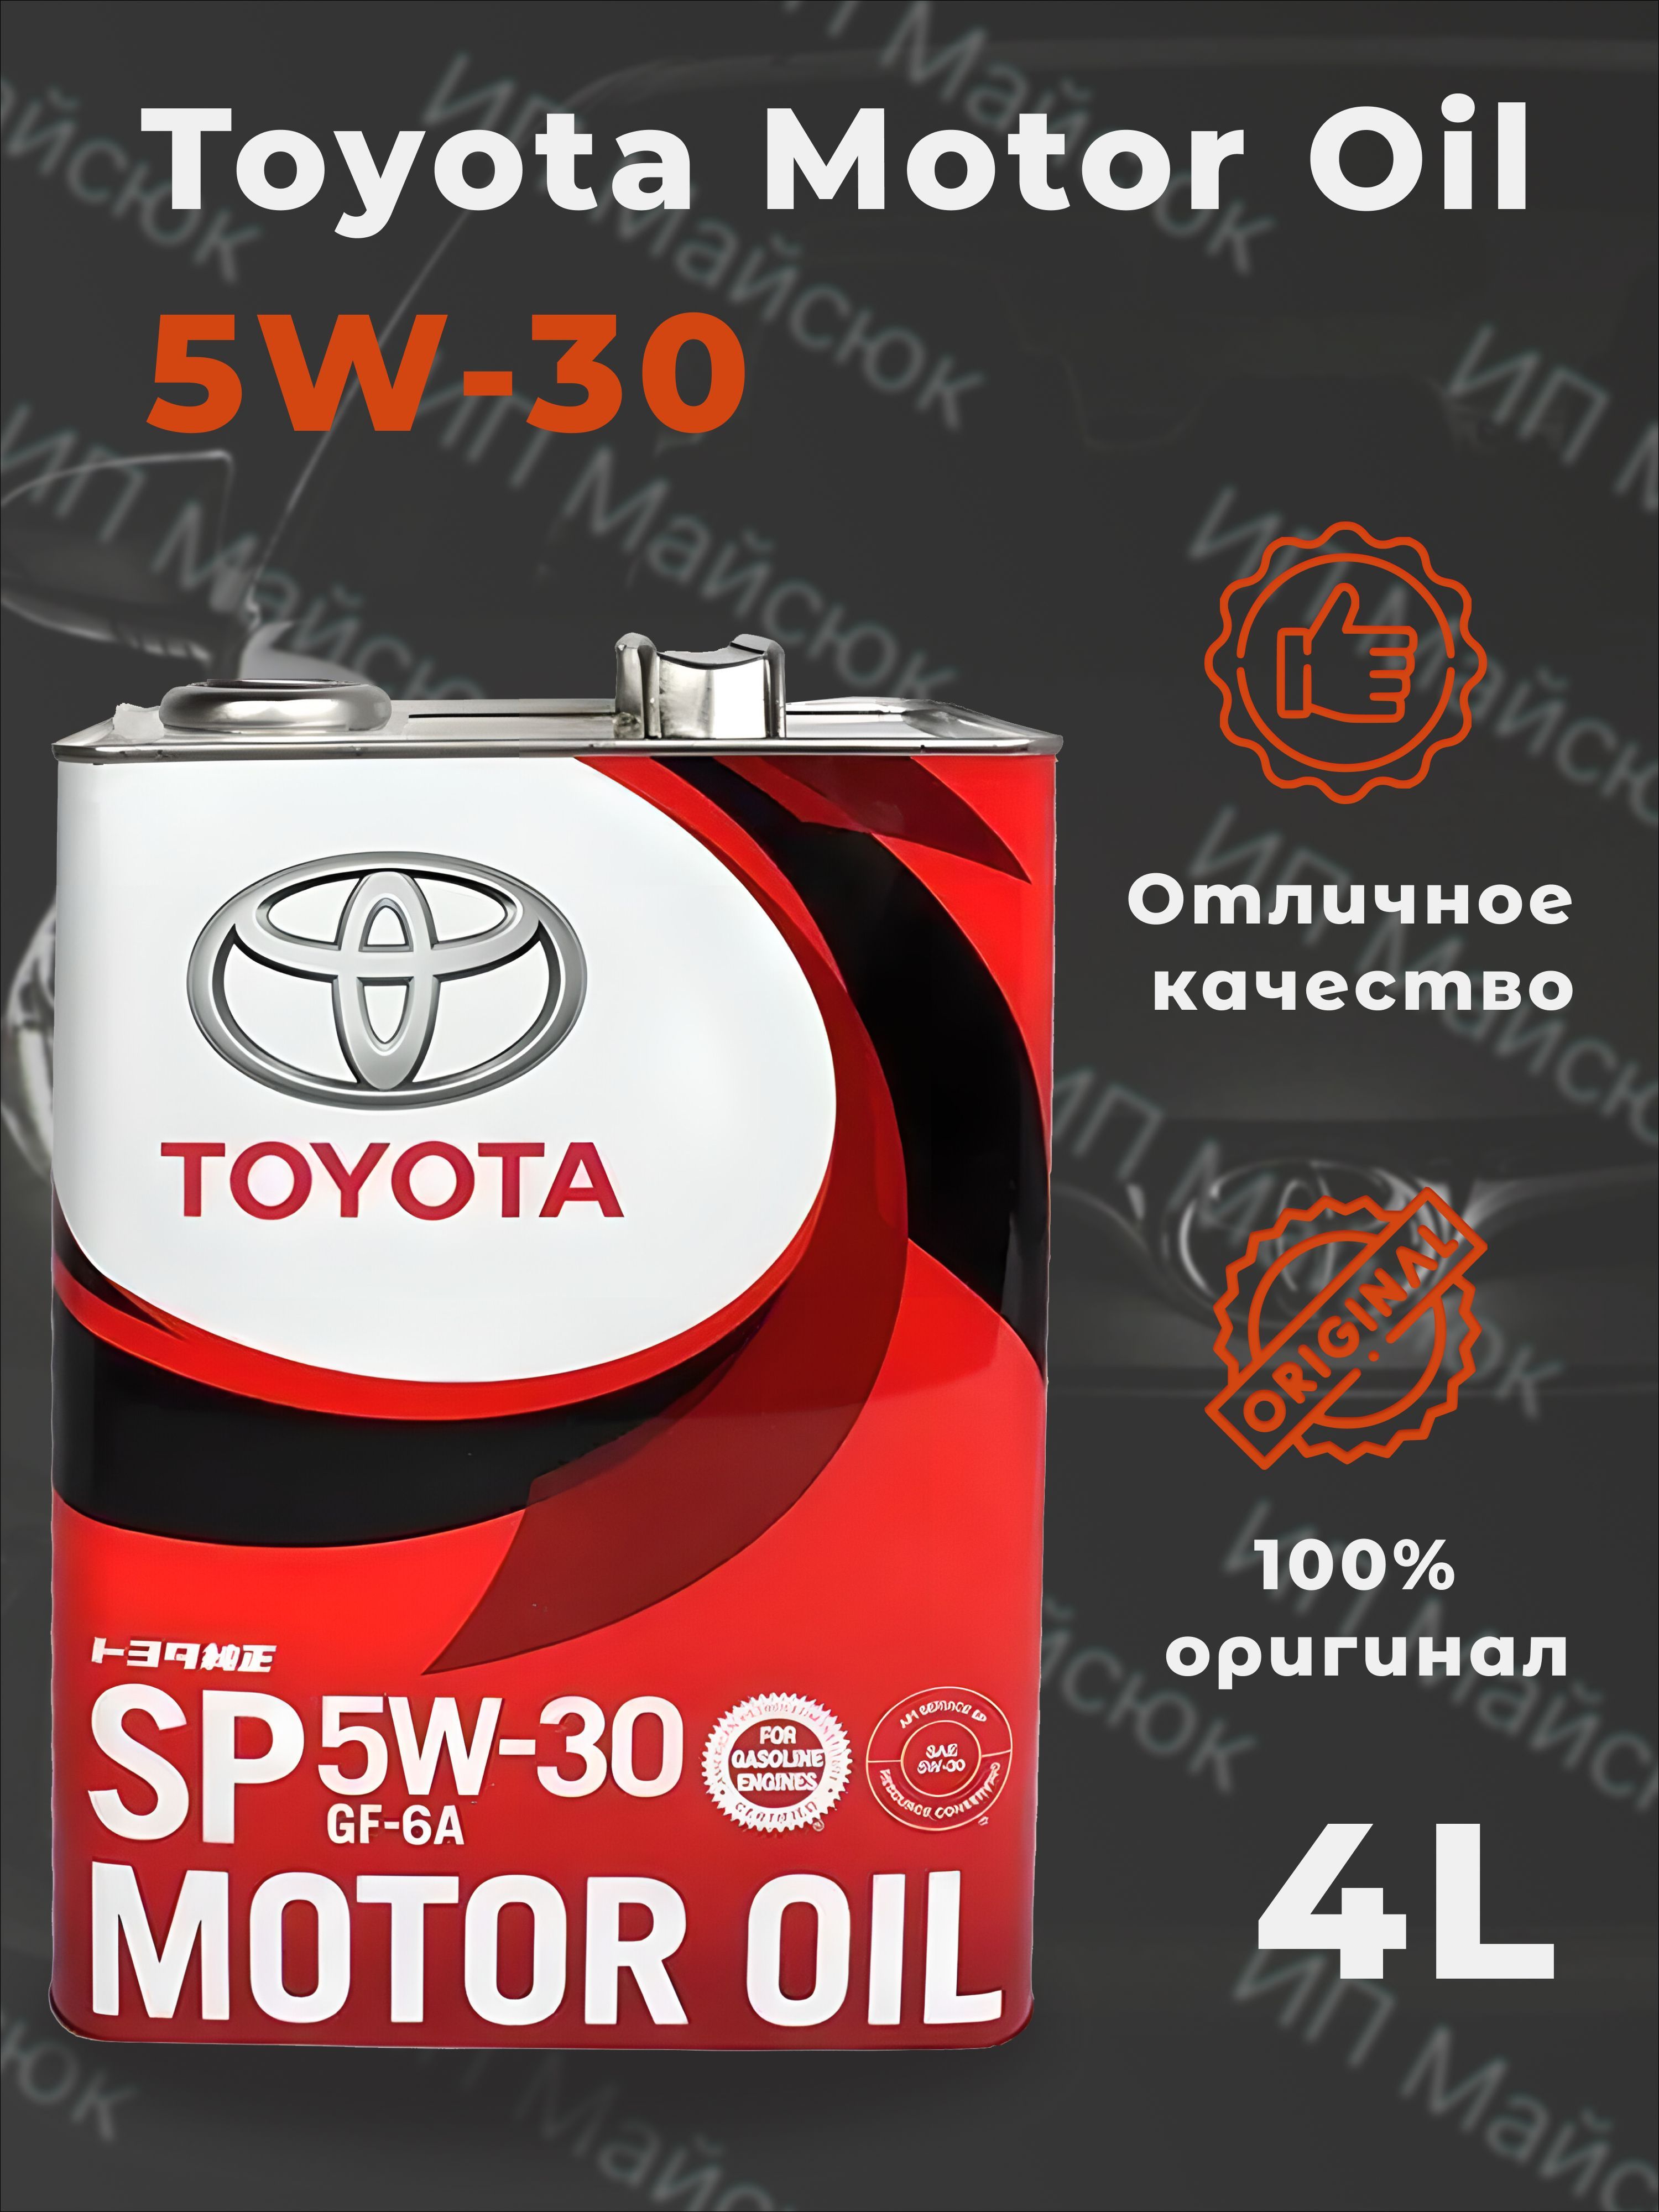 Toyota sp 5w30